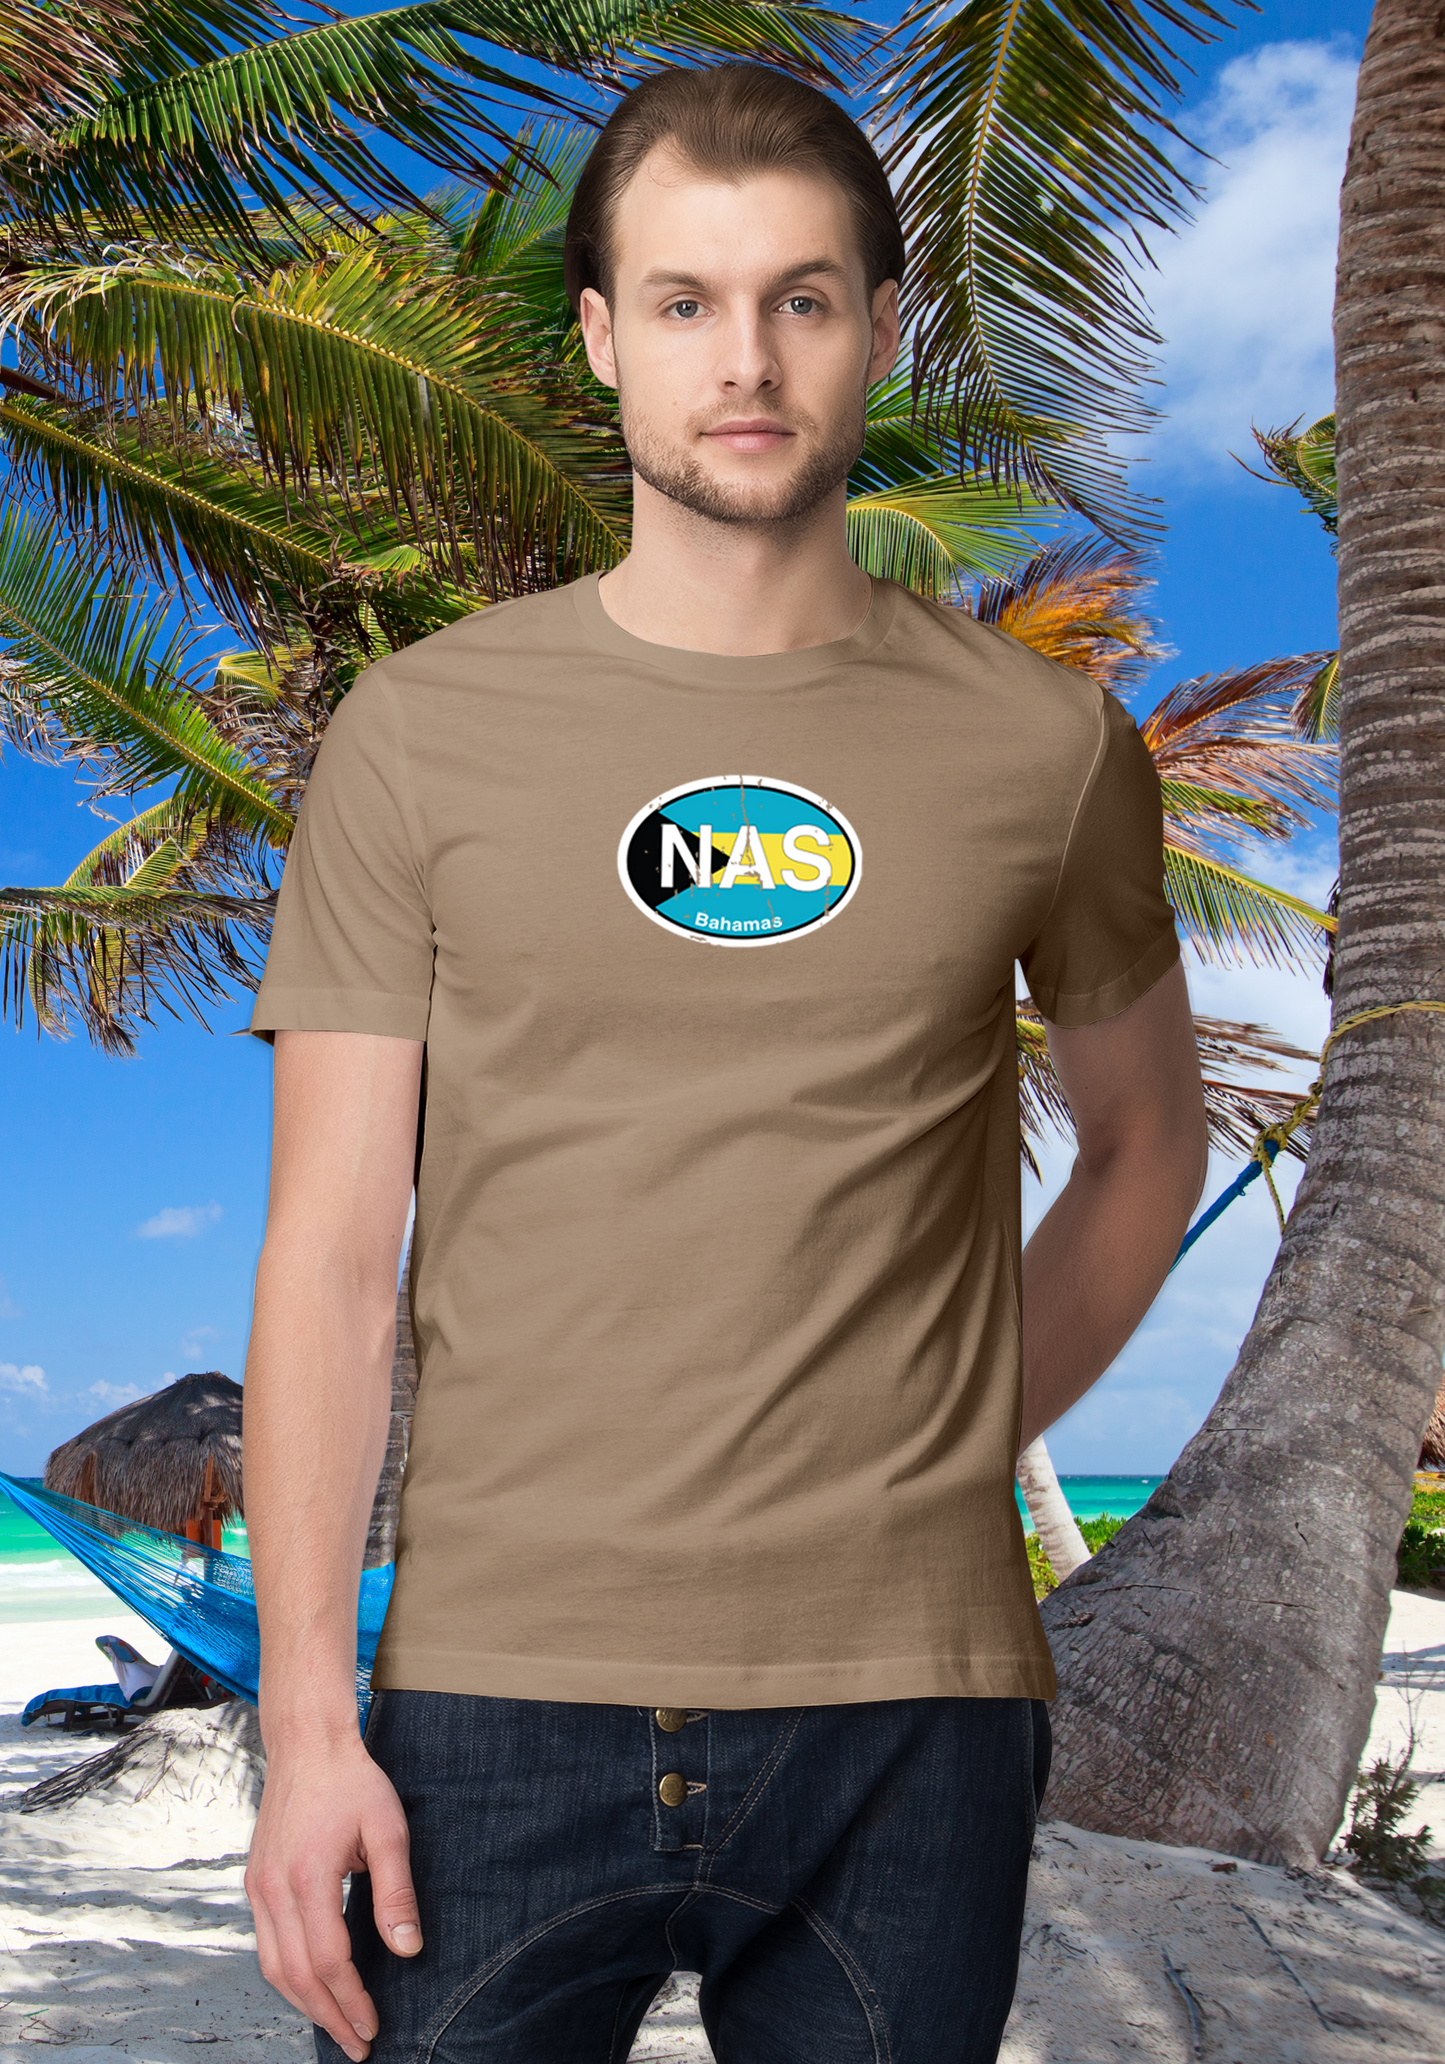 Nassau Men's Flag T-Shirt Souvenirs - My Destination Location